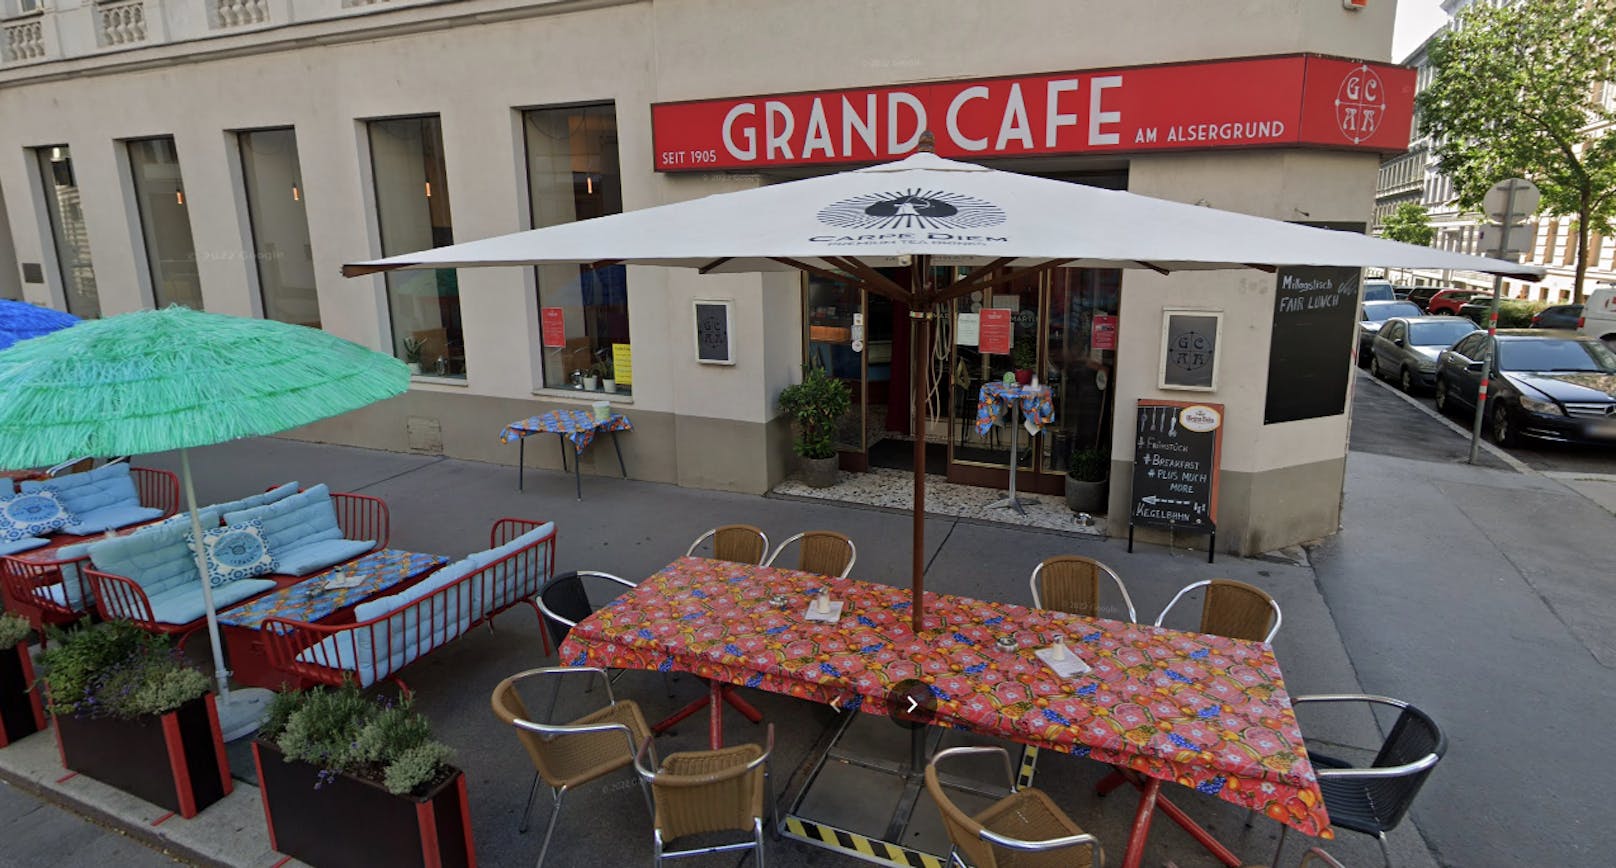 Das "Grand Cafe am Alsergrund" ist insolvent.